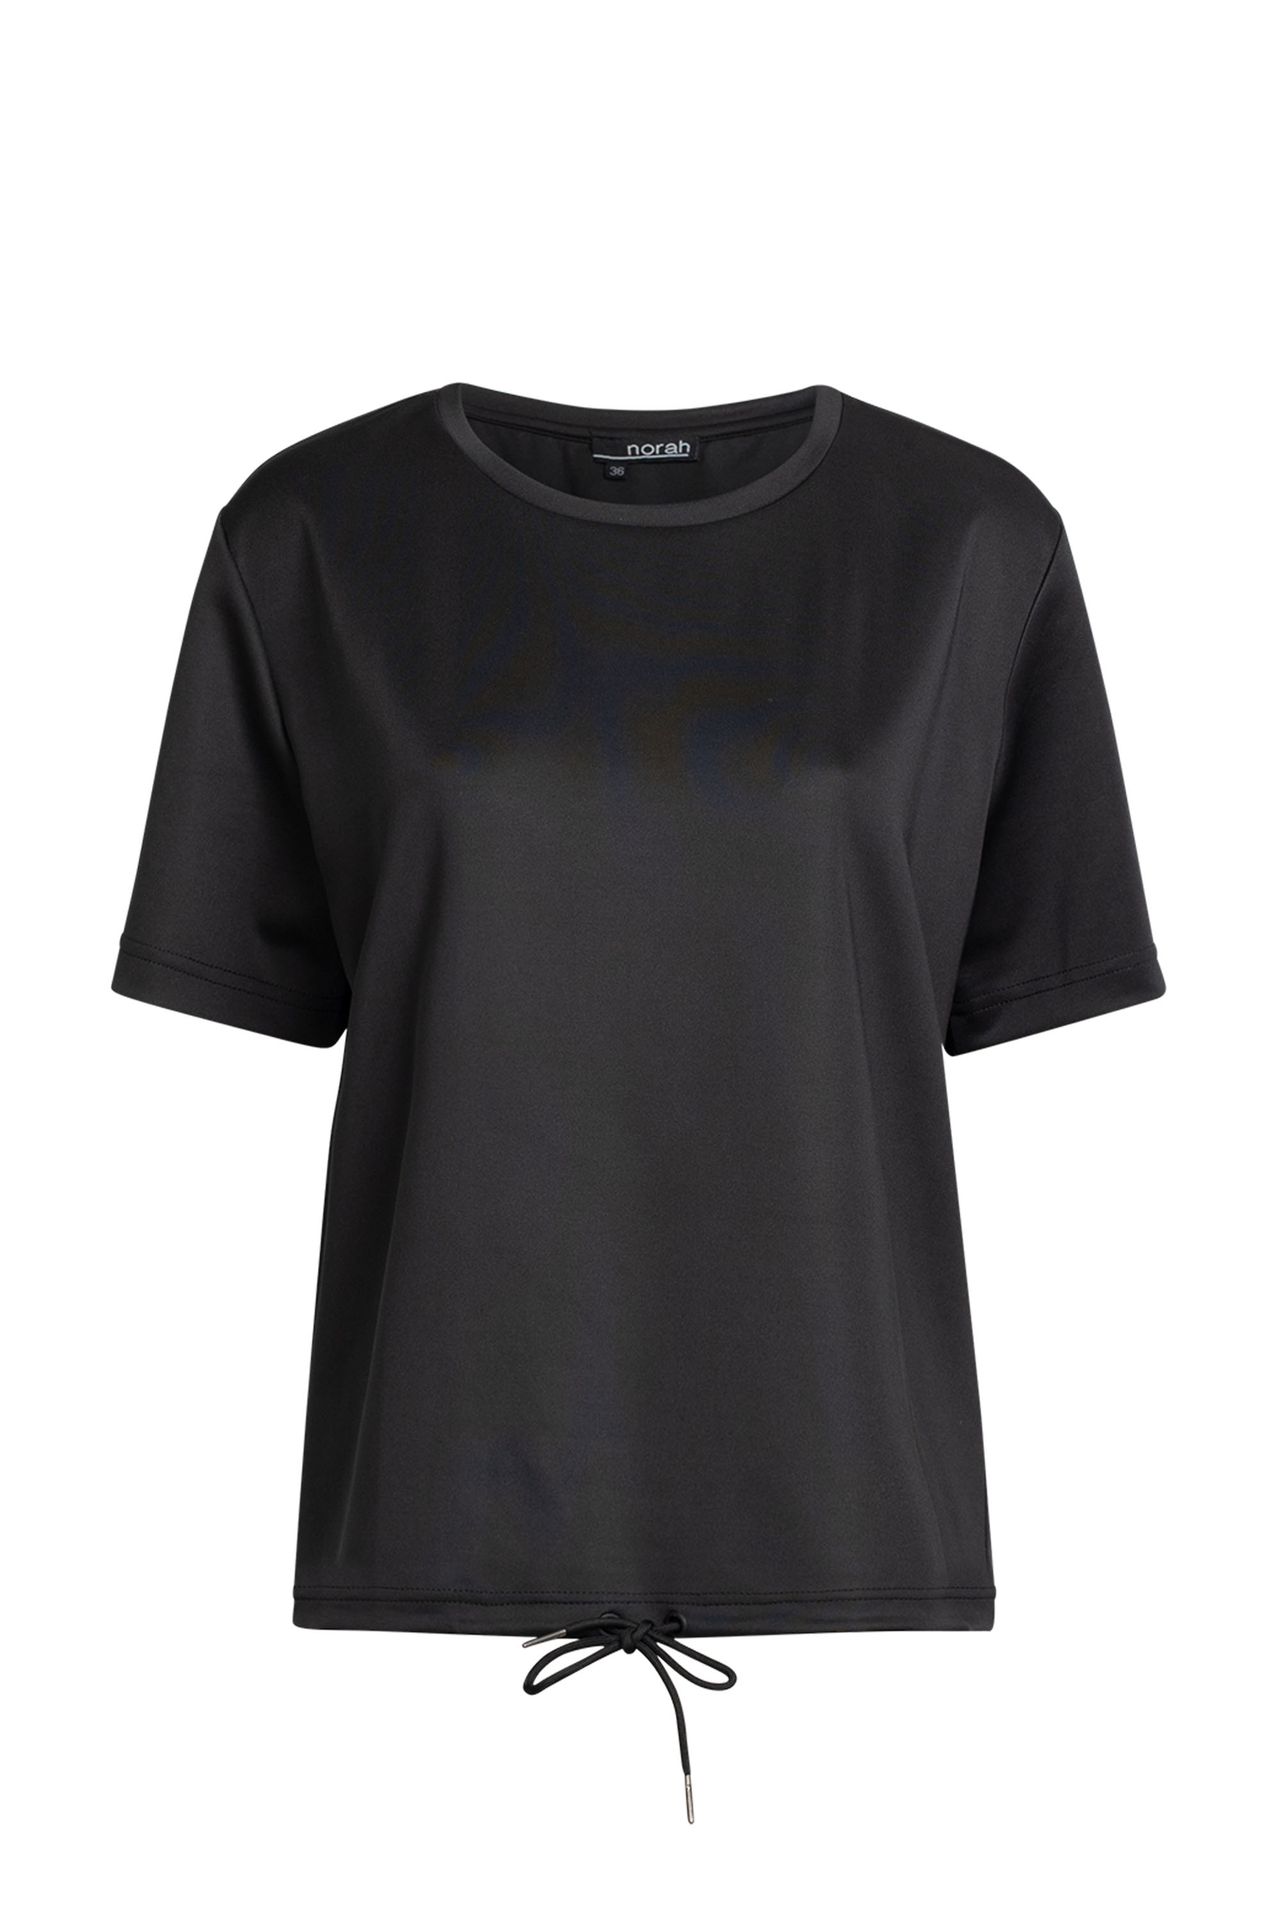  Shirt - Activewear black P-211632-001